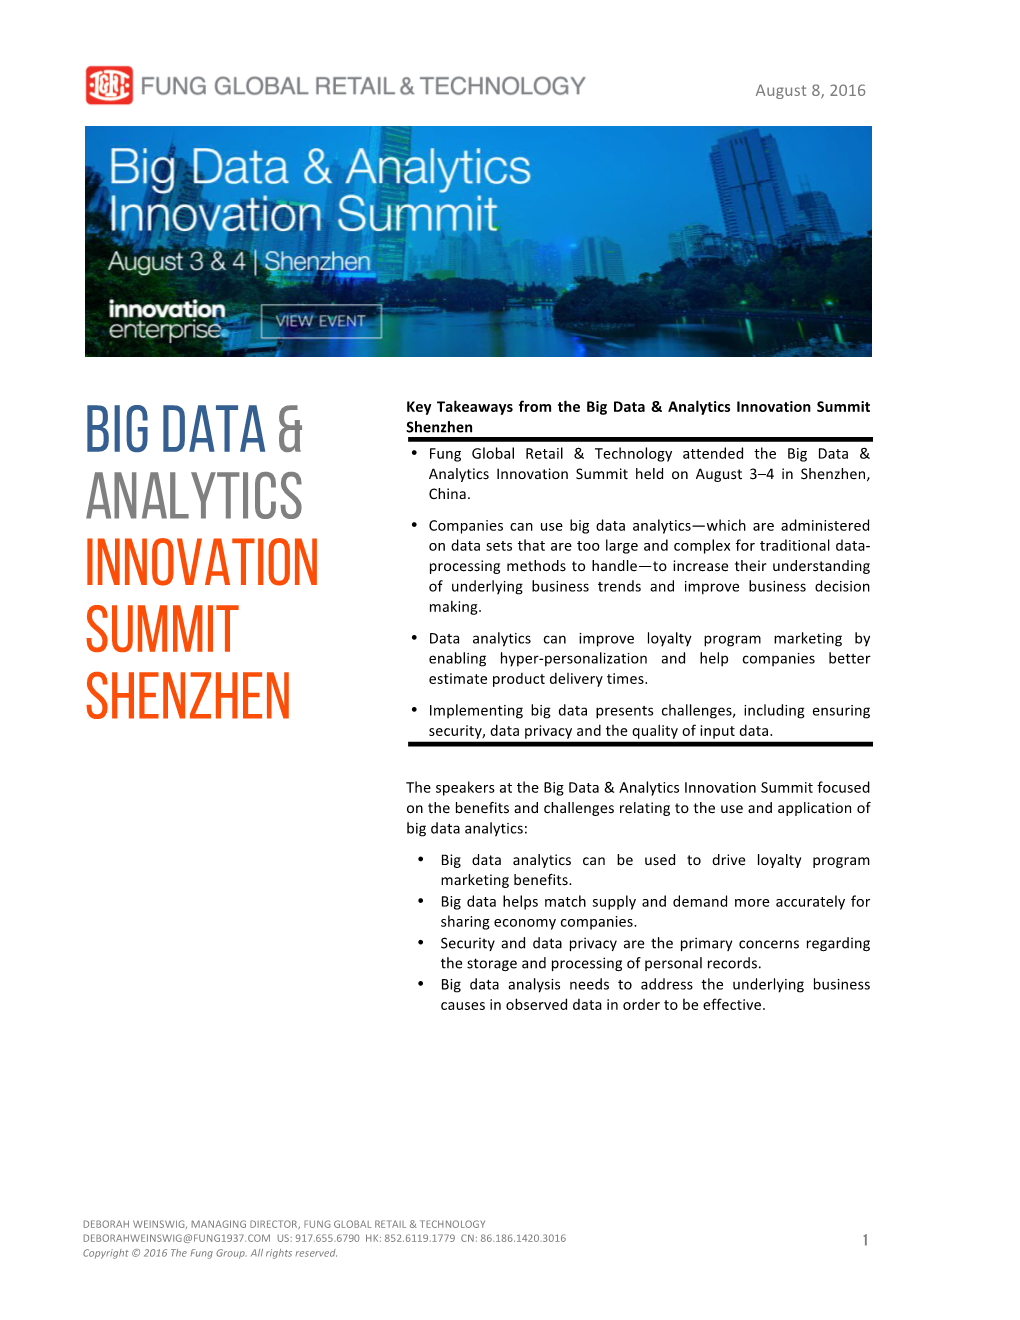 Big Data& Analytics Innovation Summit Shenzhen